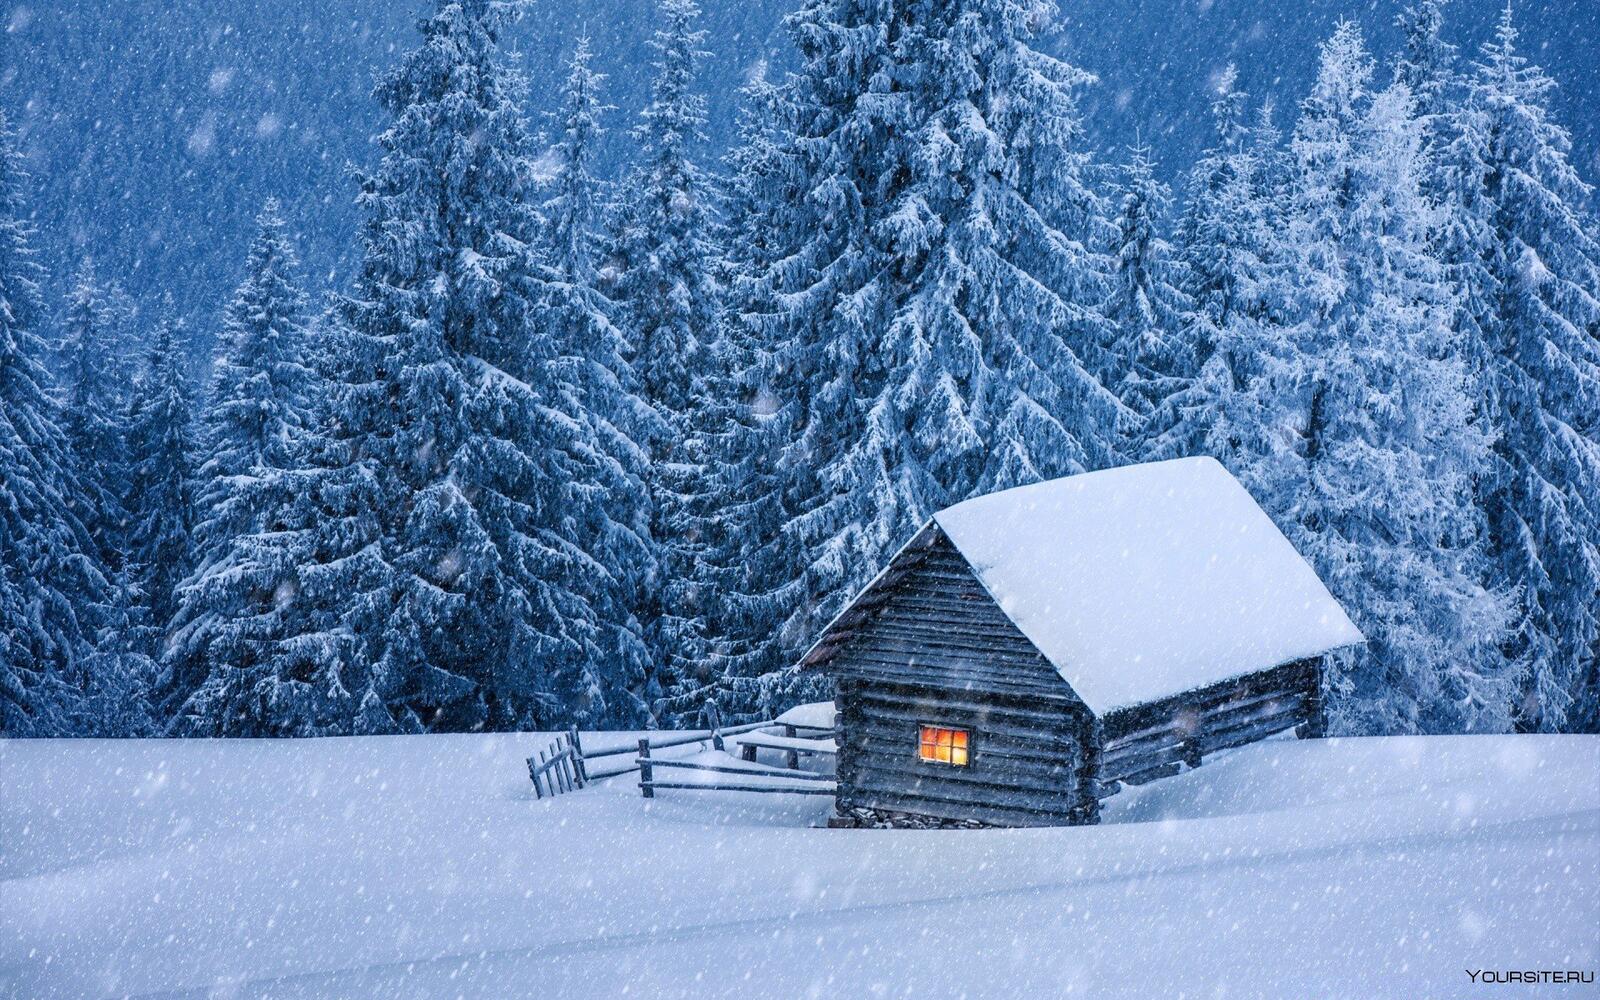 免费照片壁纸 在白色圣诞树中覆盖着白雪的房子